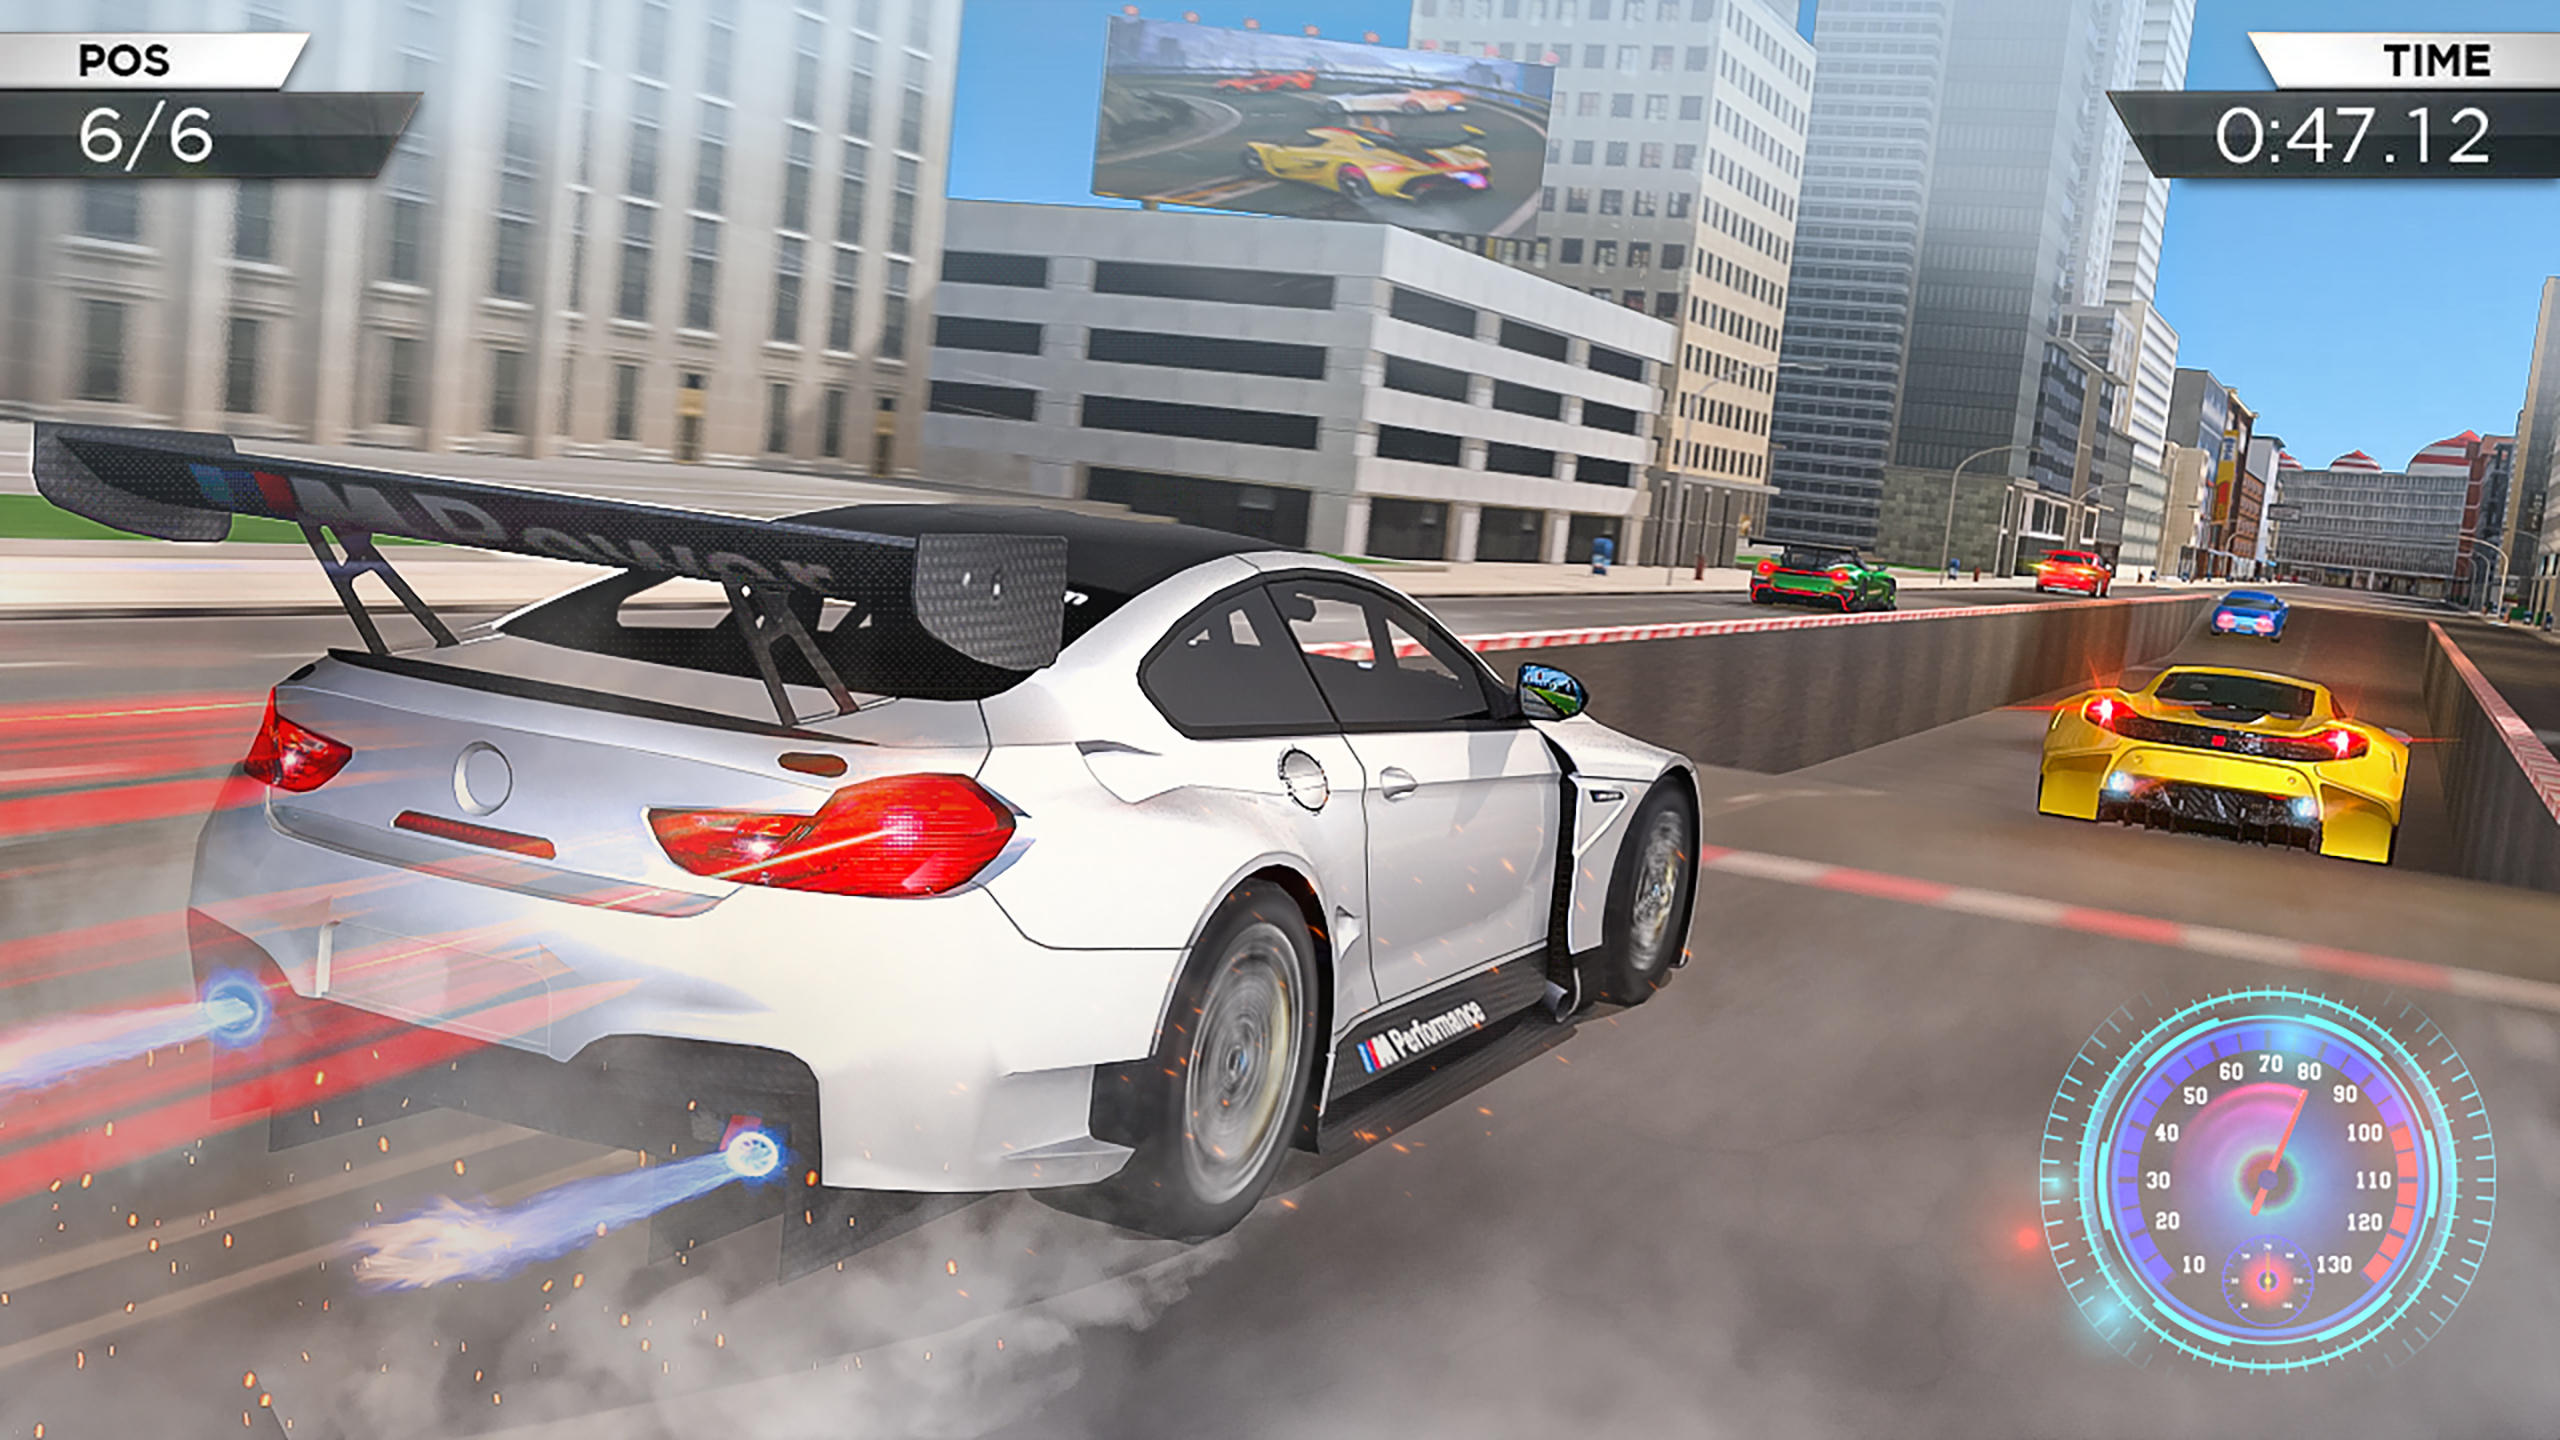 Crazy Car Traffic Racing Games 2020 - New Car Games Simulator